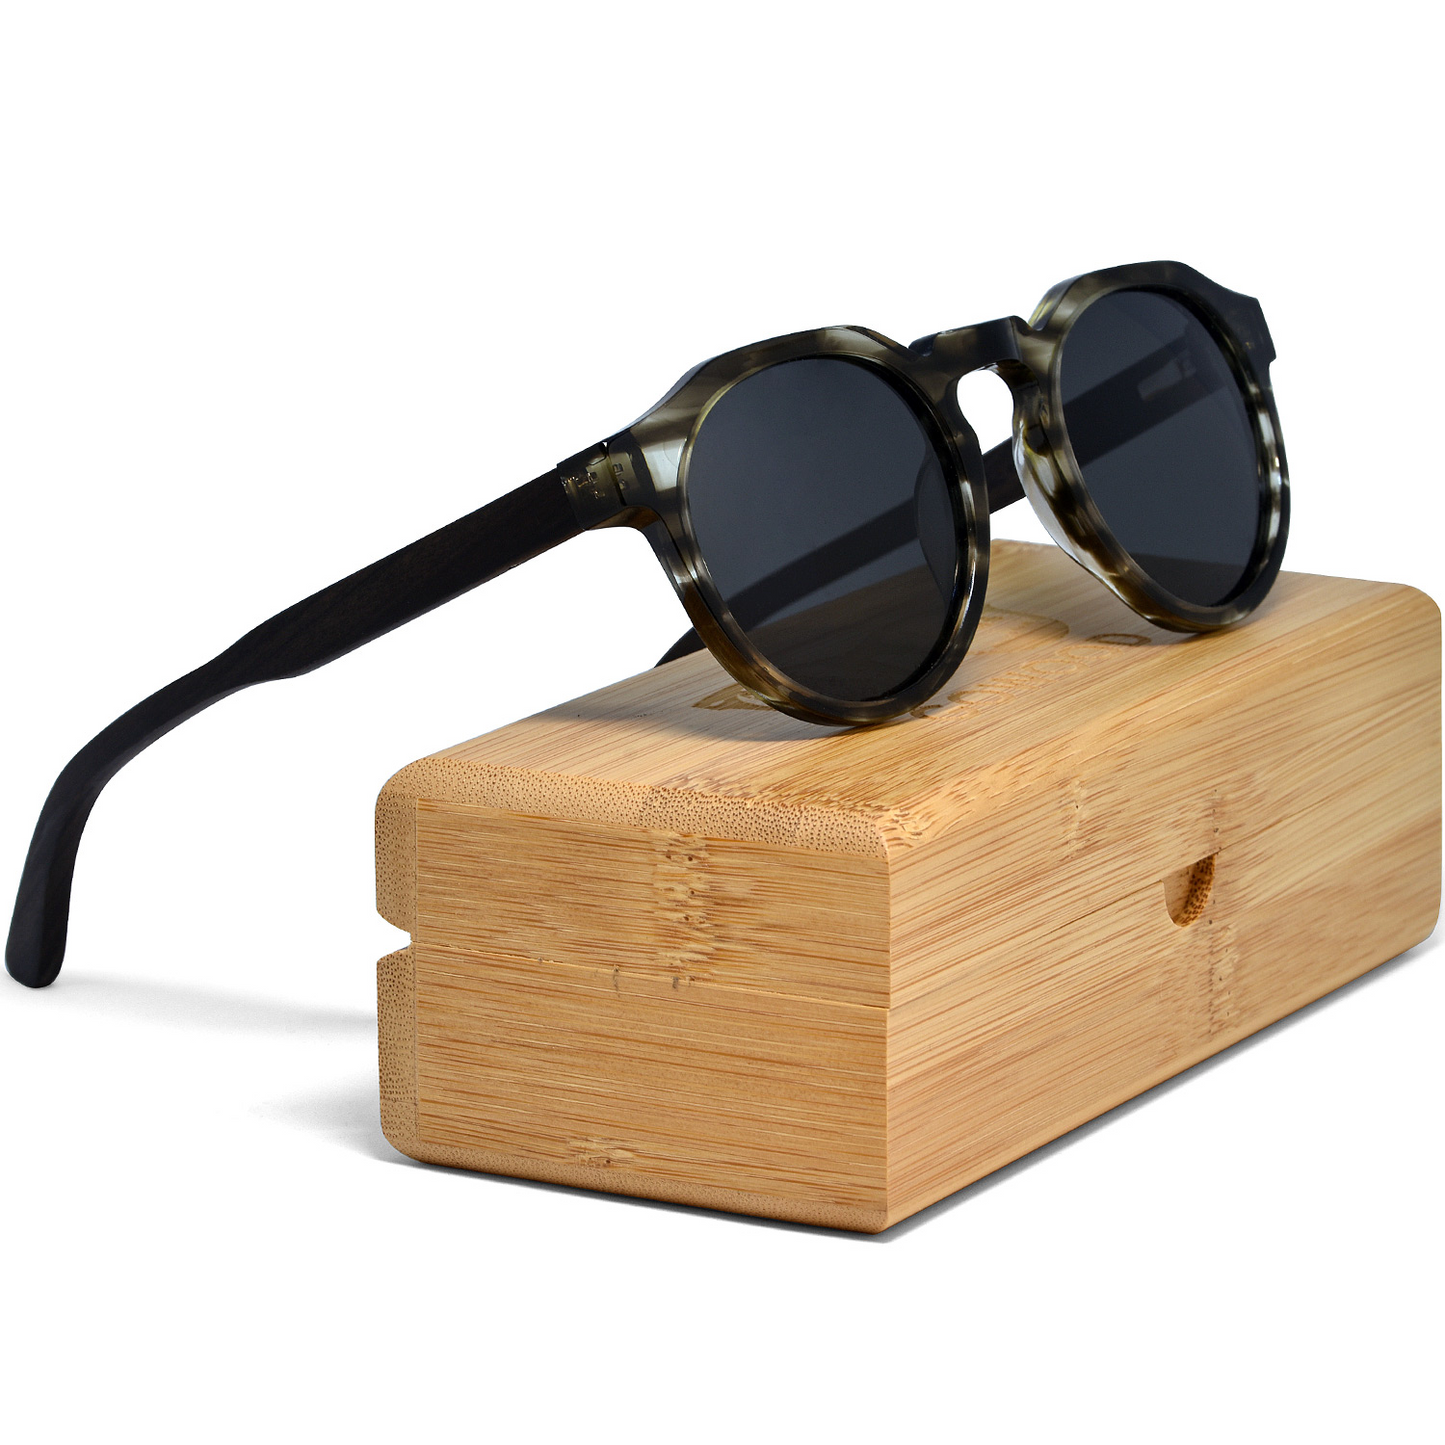 Ebony wood panto sunglasses with smog frame and black polarized lenses